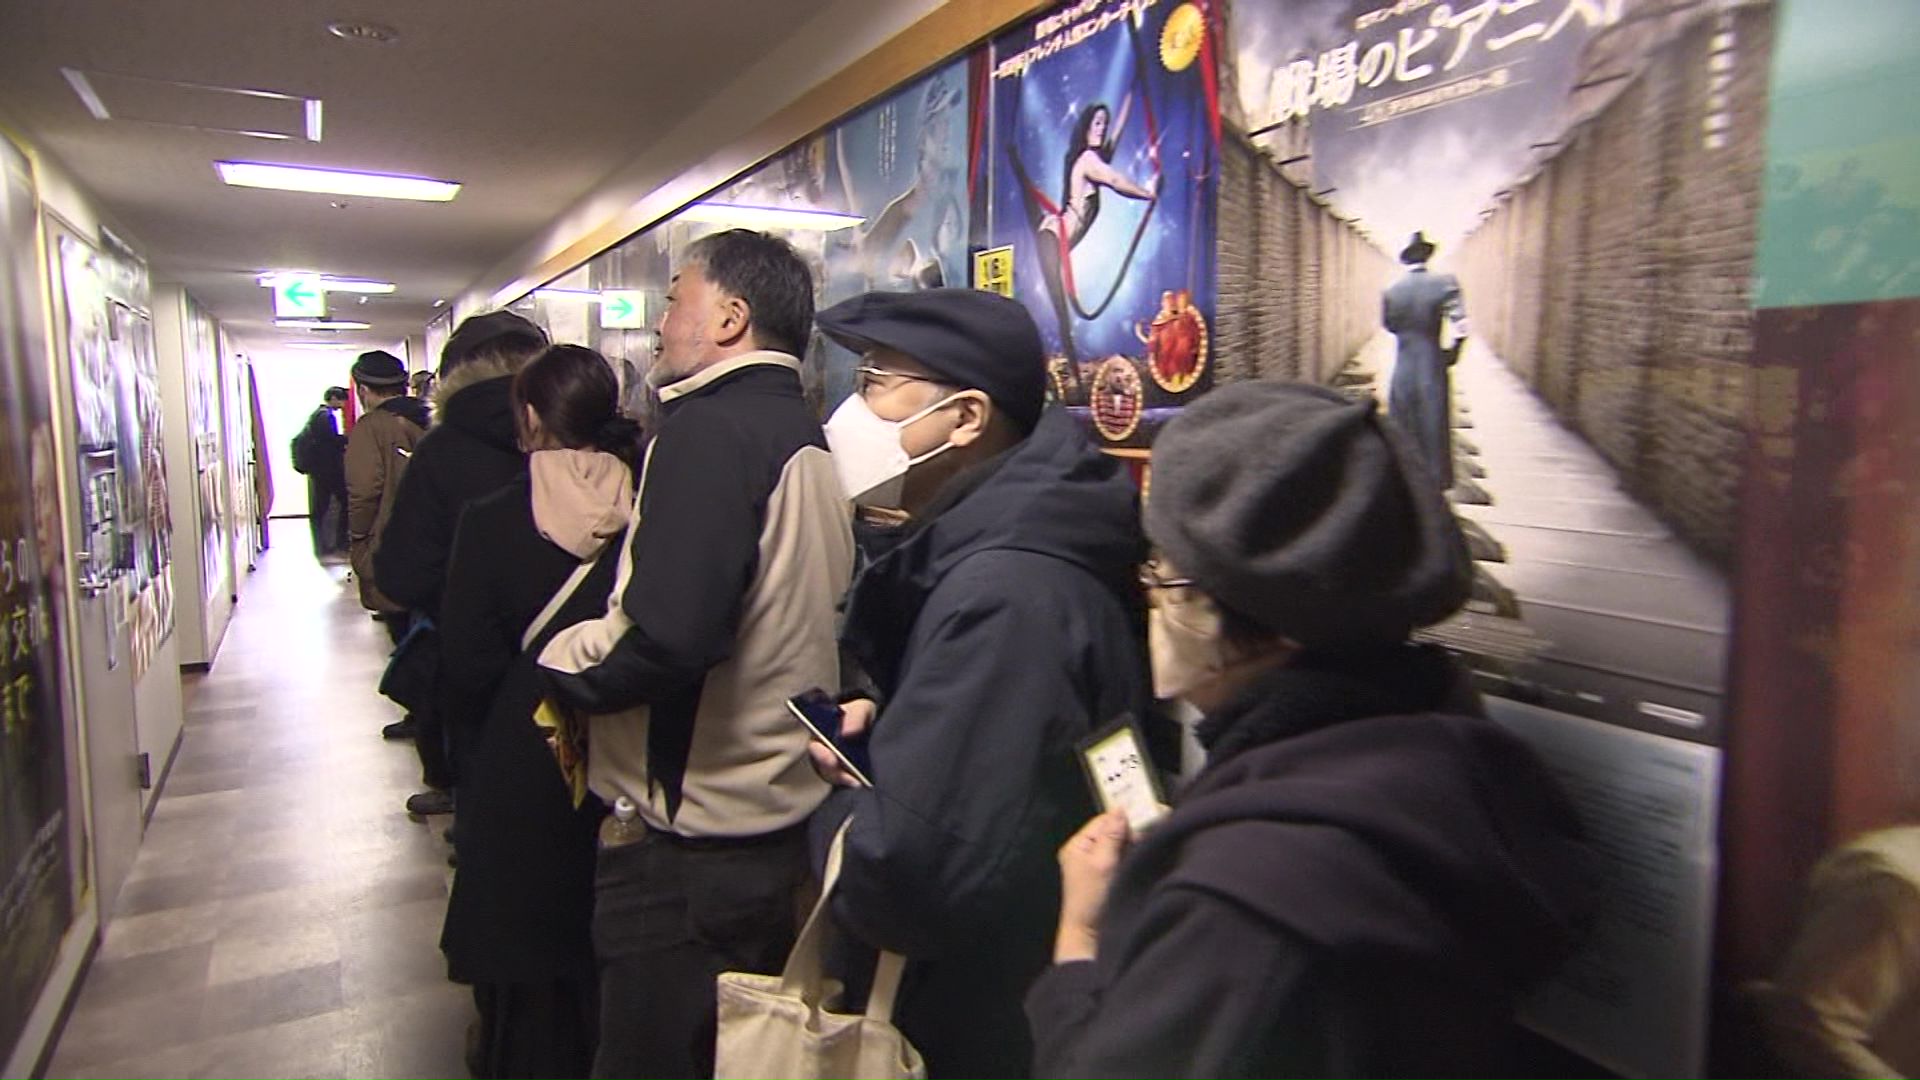 札幌市のシアターキノでは行列が…1月26日までの公開延長決定